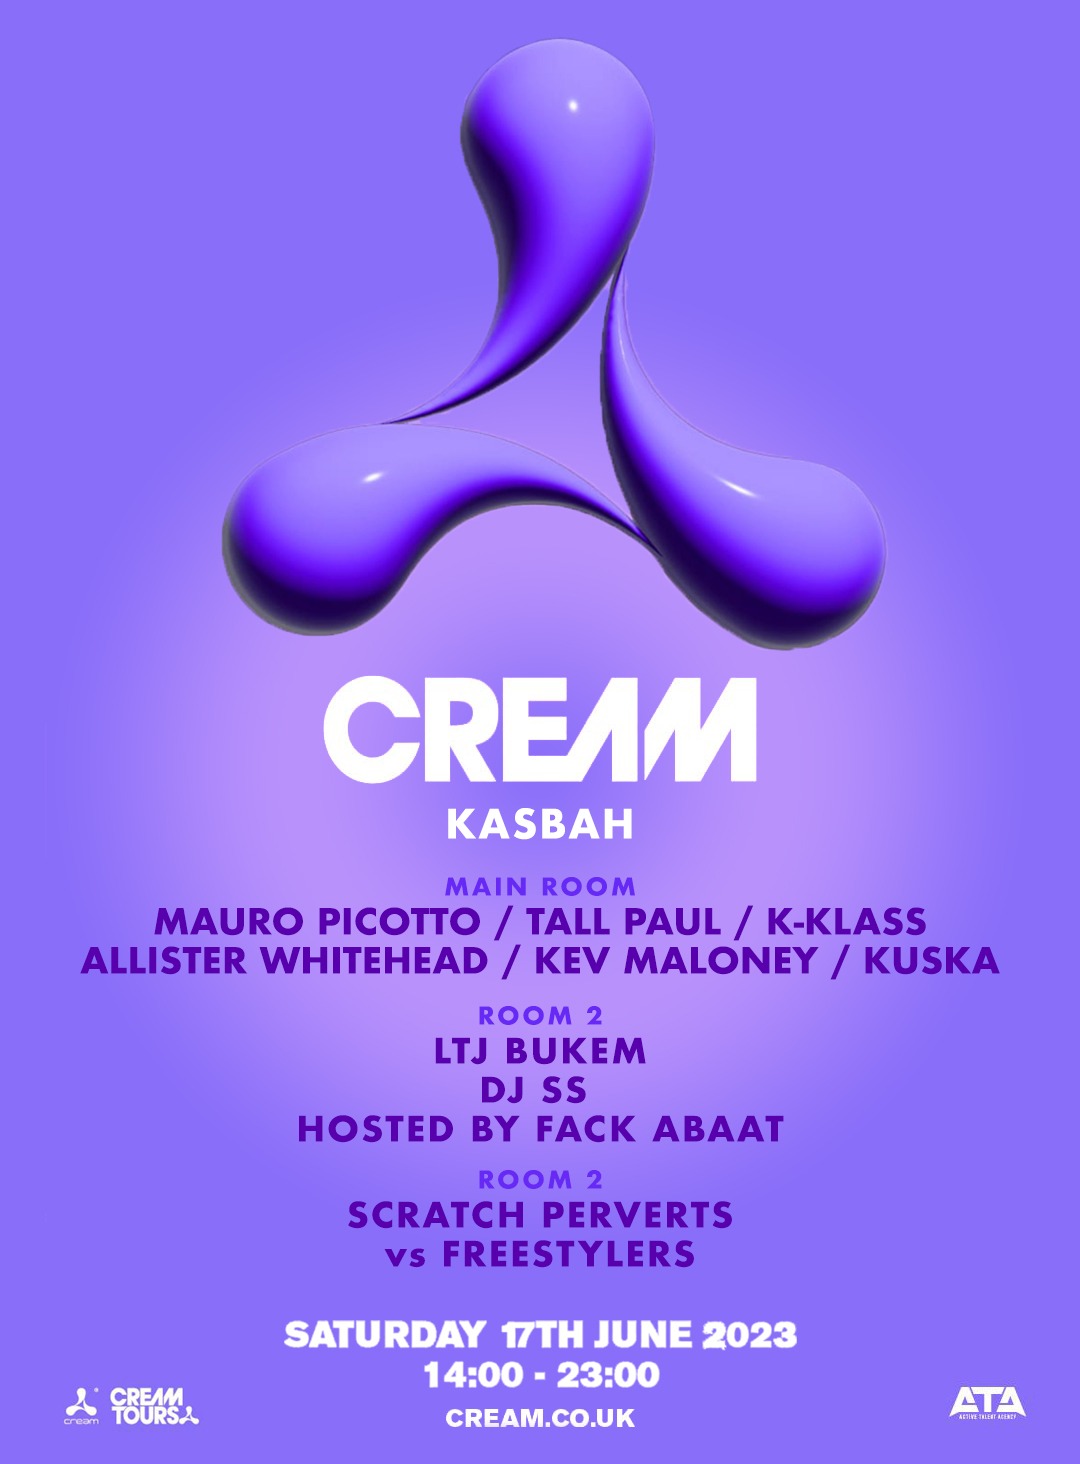 Cream Presents 17th June